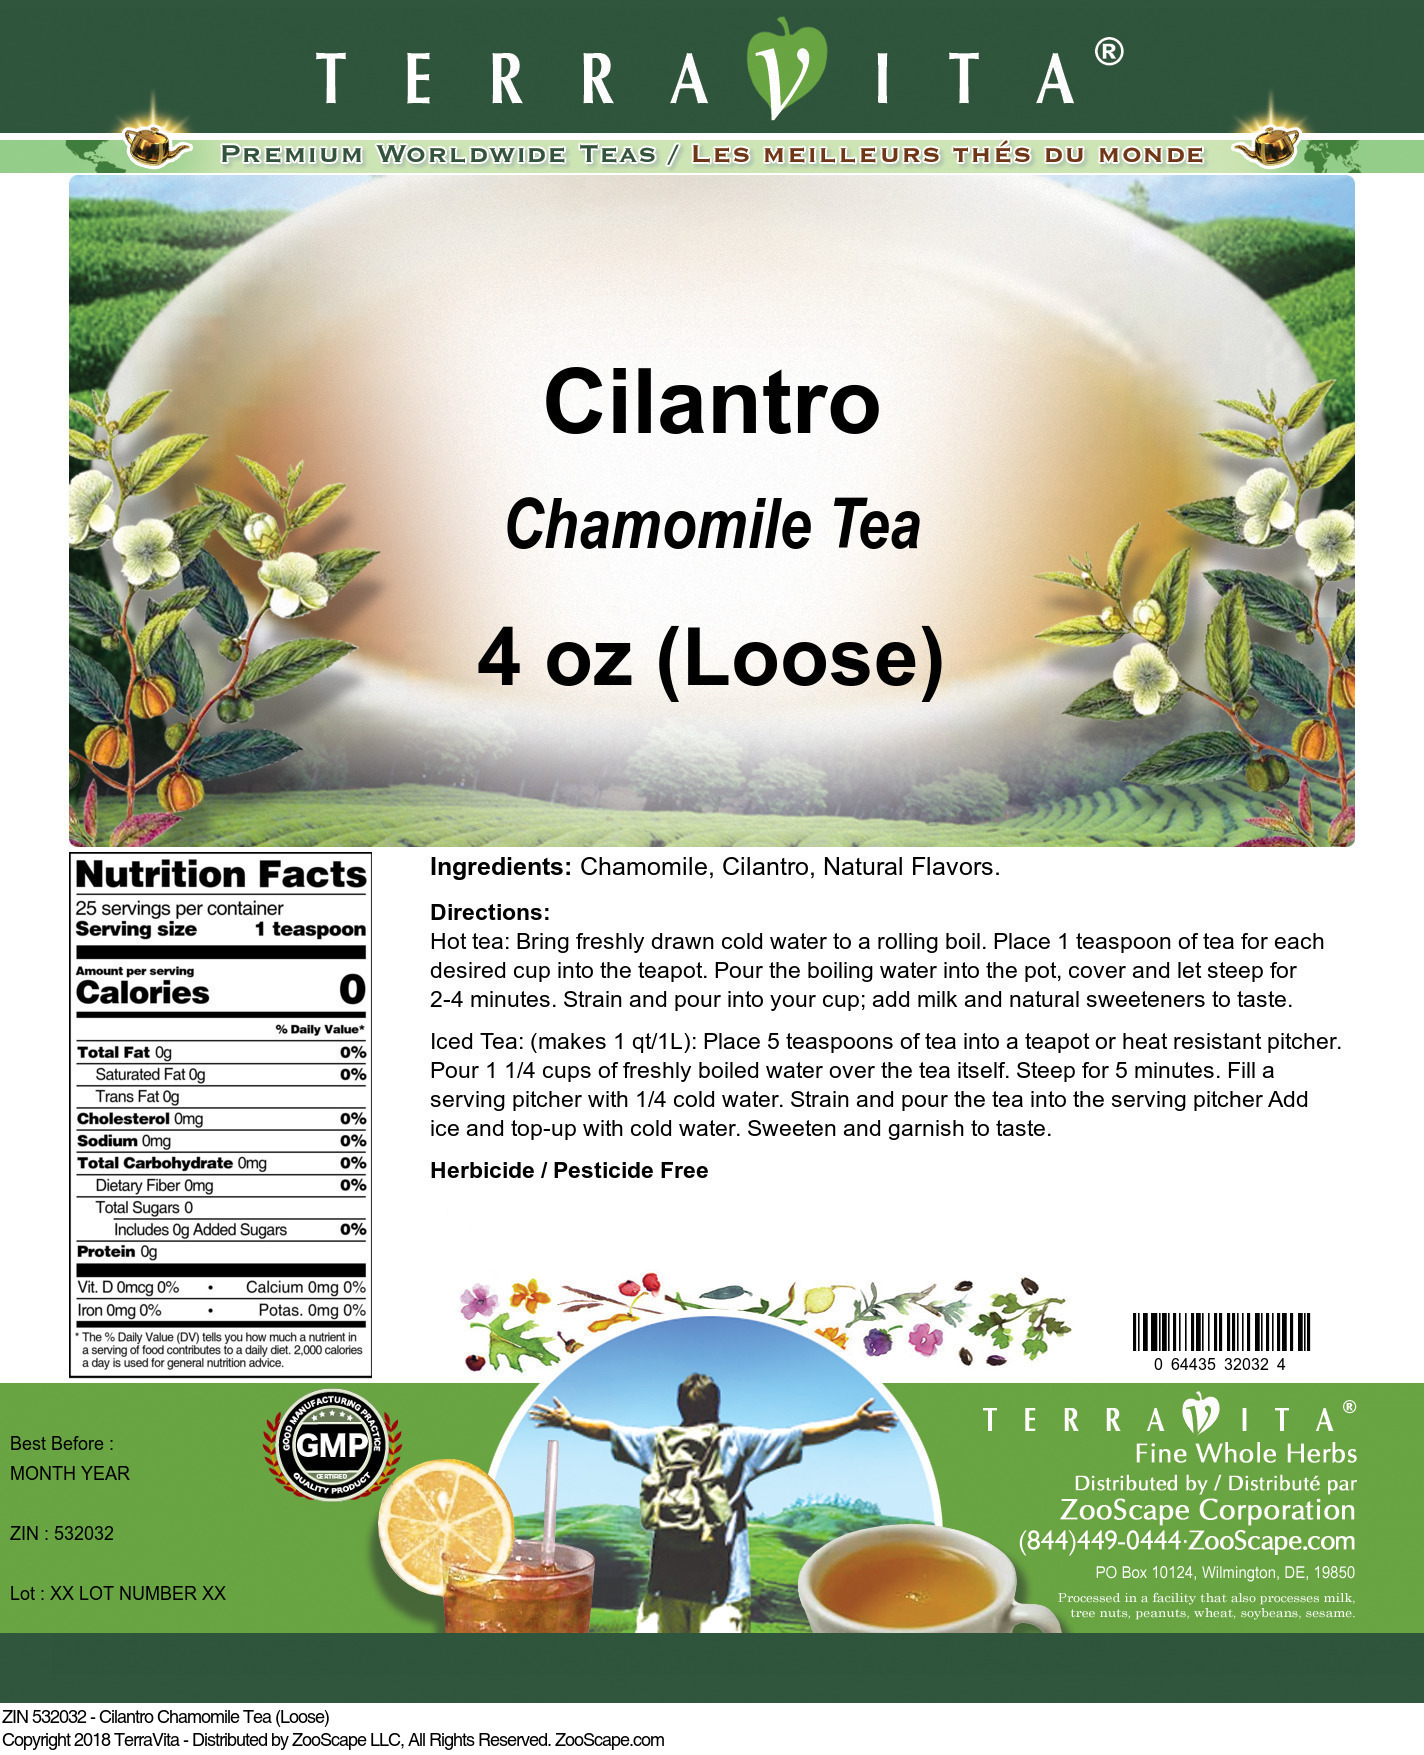 Cilantro Chamomile Tea (Loose) - Label